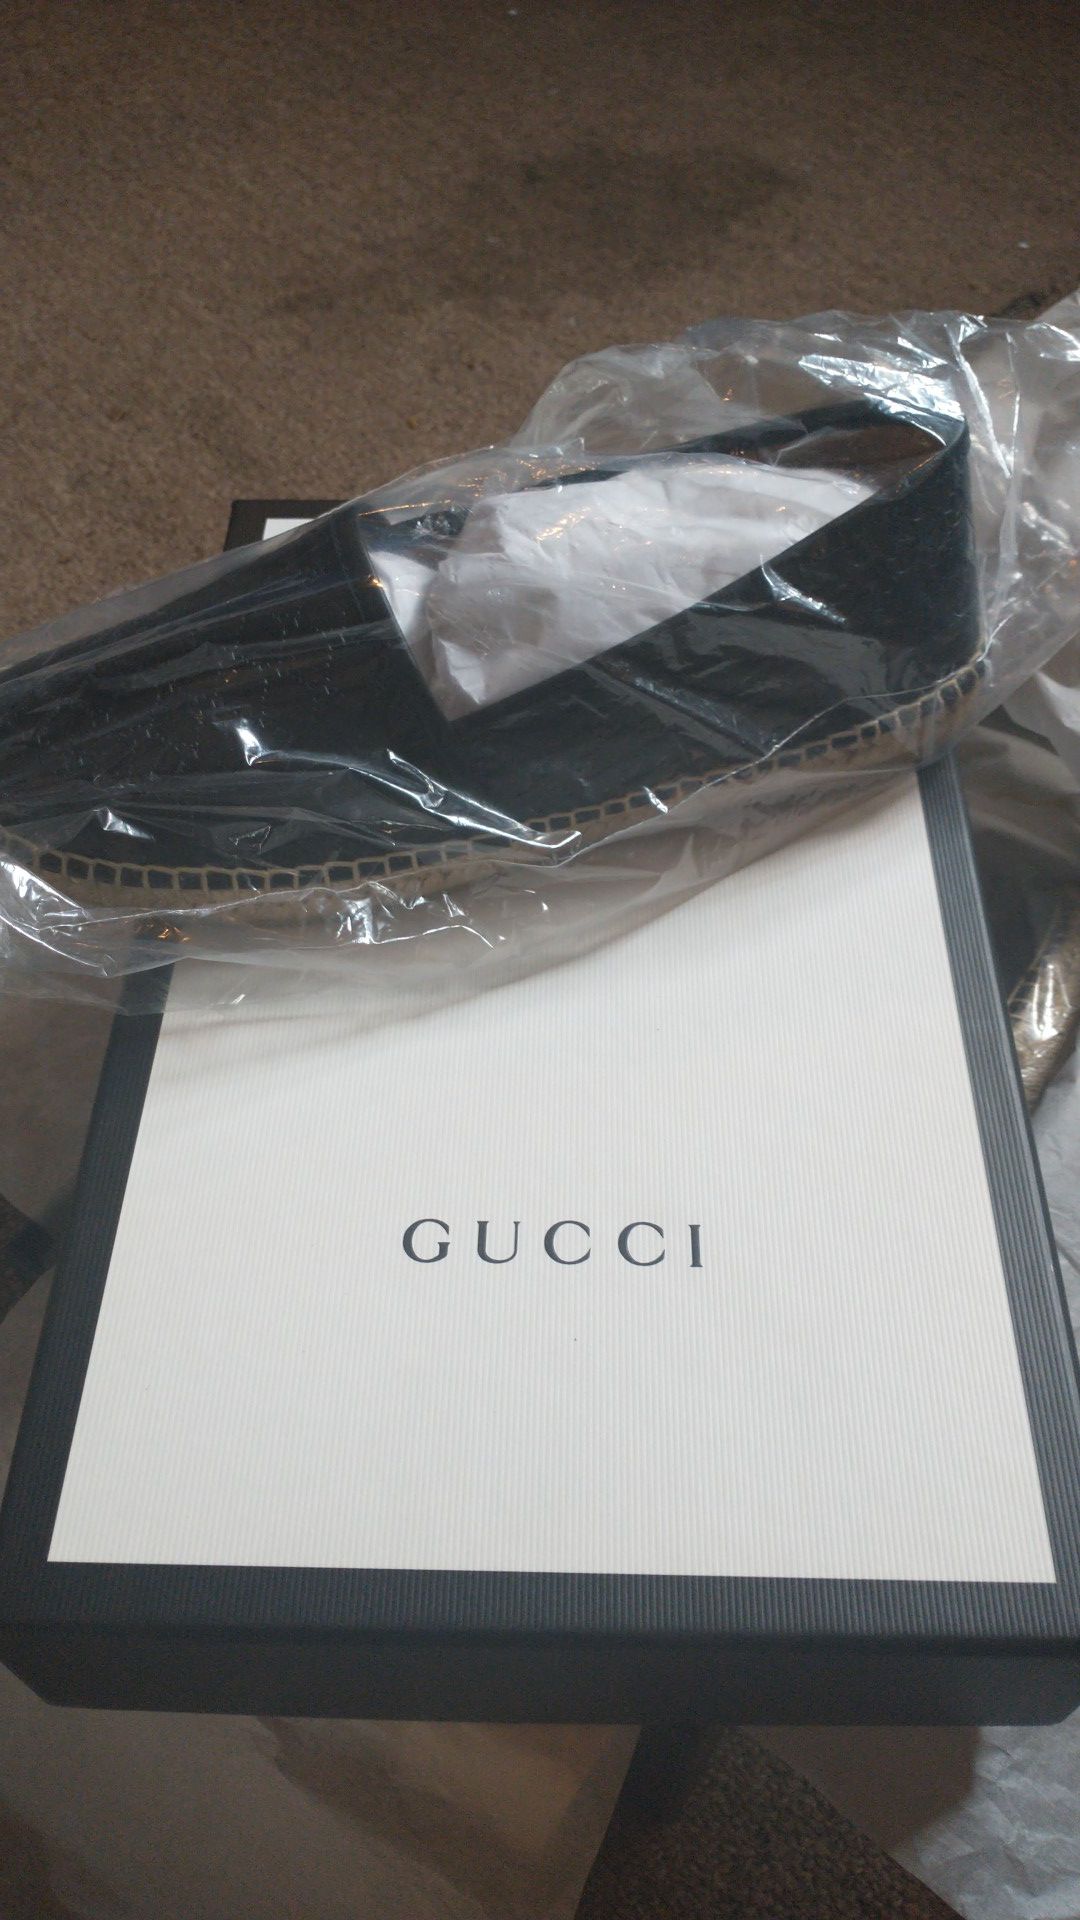 Gucci shoes- black